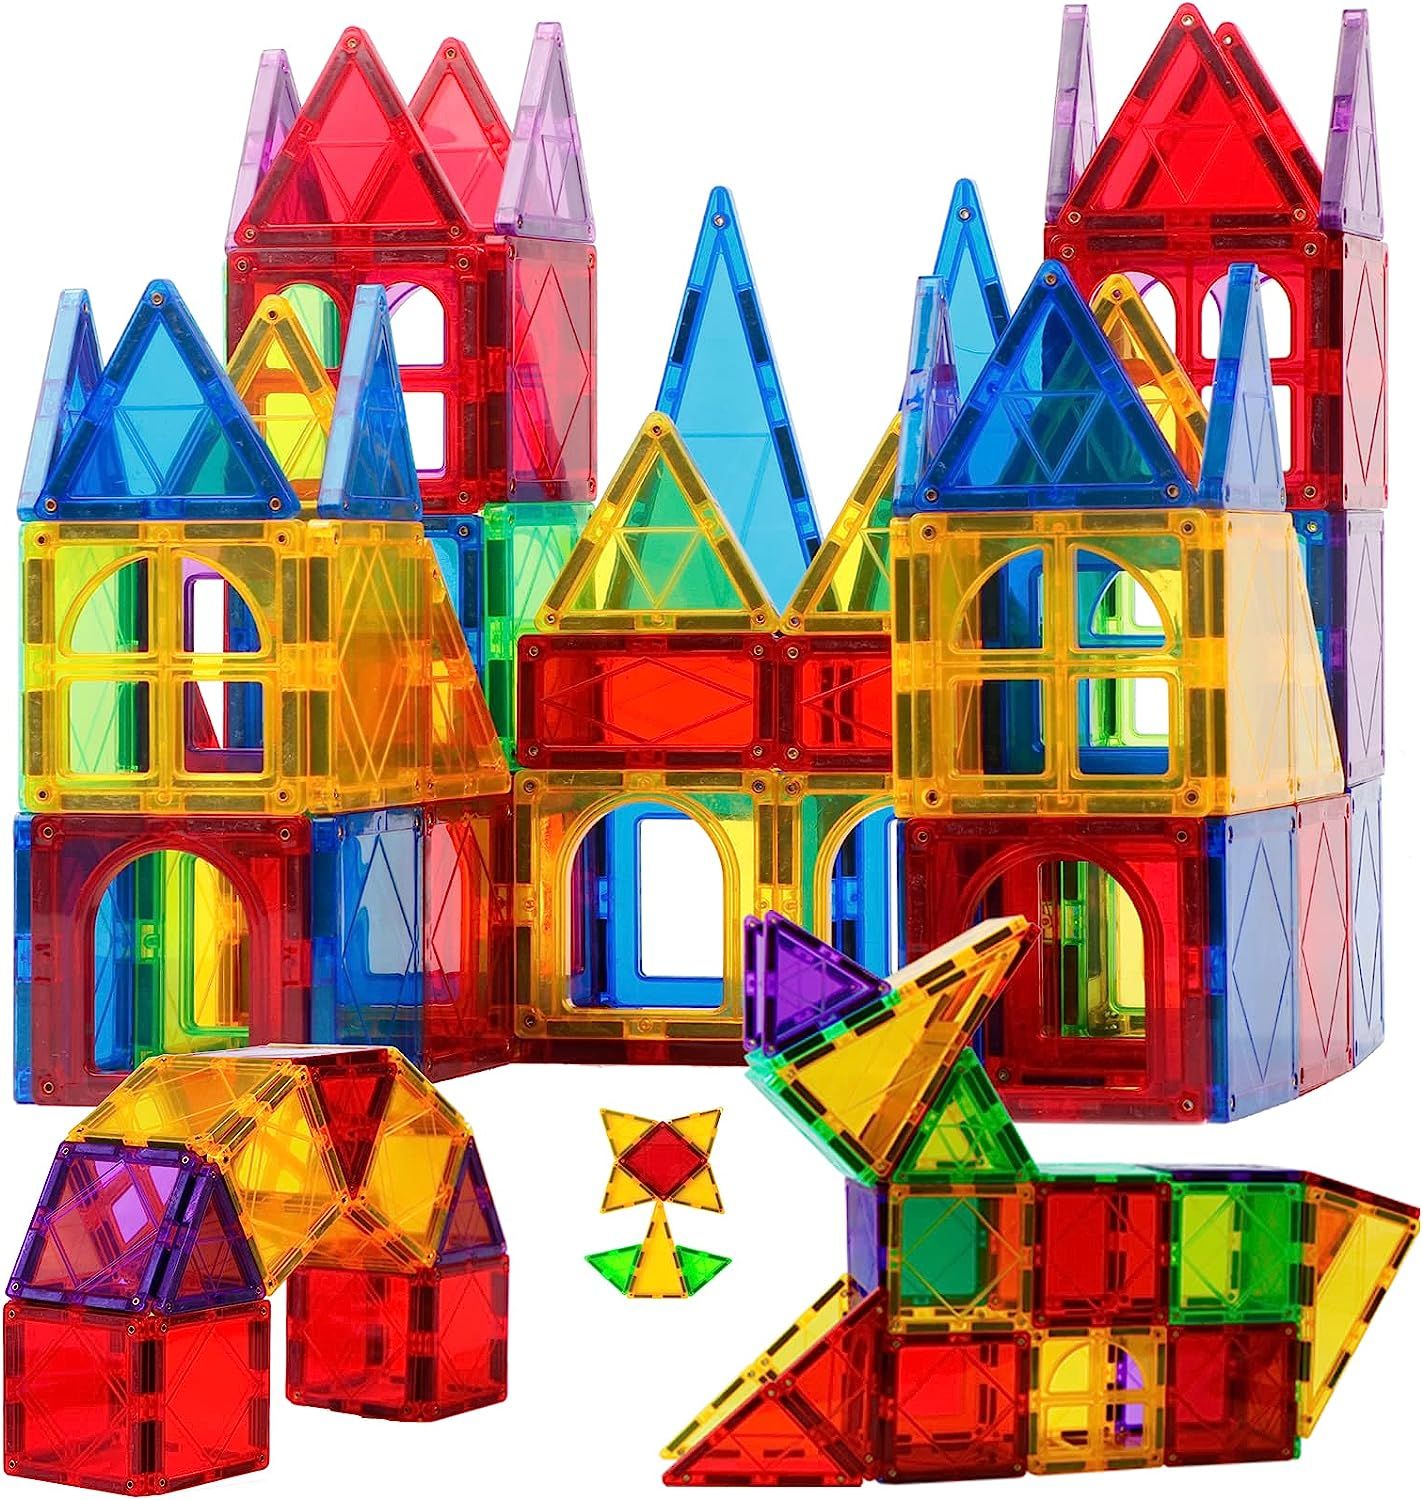 Magnet Toys Kids Magnetic Building Tiles 100 Pcs 3D Magnetic Blocks Preschool Building Sets Educa... | Amazon (US)